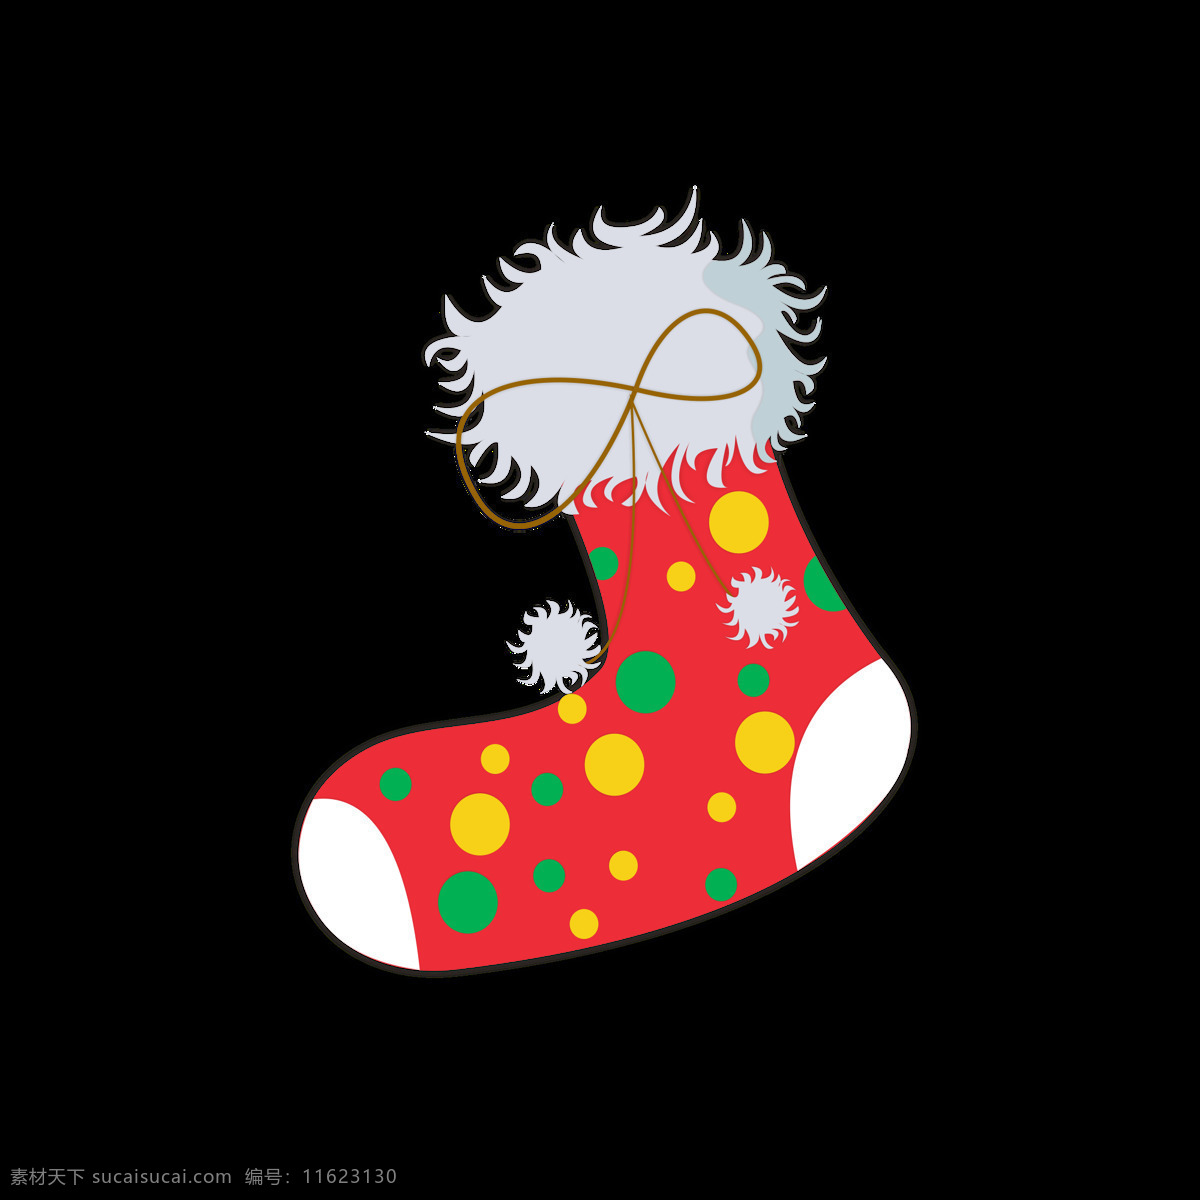 圣诞节 元素 卡通 可爱 袜子 节日 冬天 元素设计